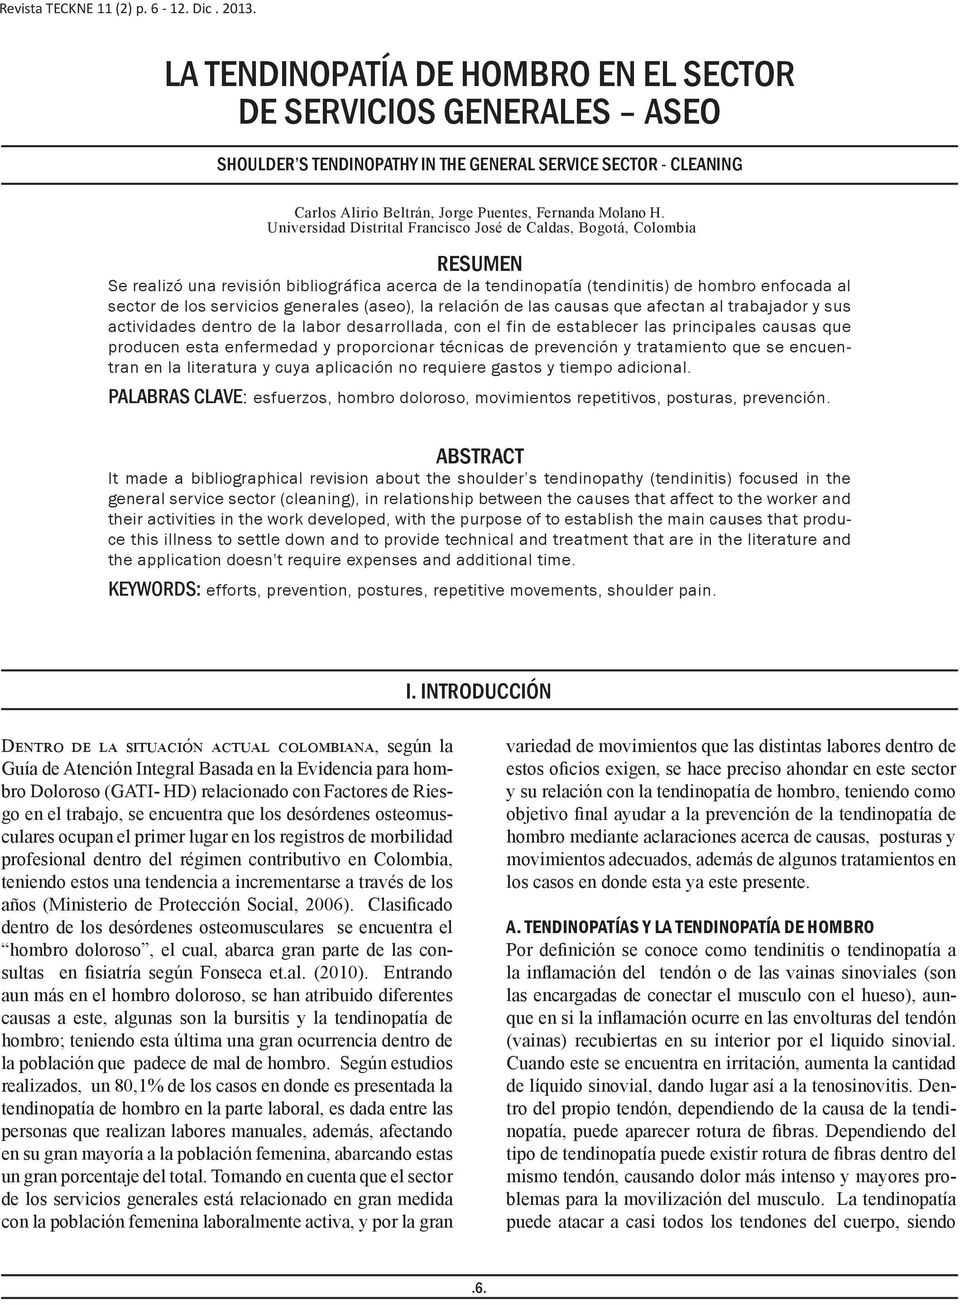 Universidad Distrital Francisco José de Caldas, Bogotá, Colombia RESUMEN Se realizó una revisión bibliográfica acerca de la tendinopatía (tendinitis) de hombro enfocada al sector de los servicios